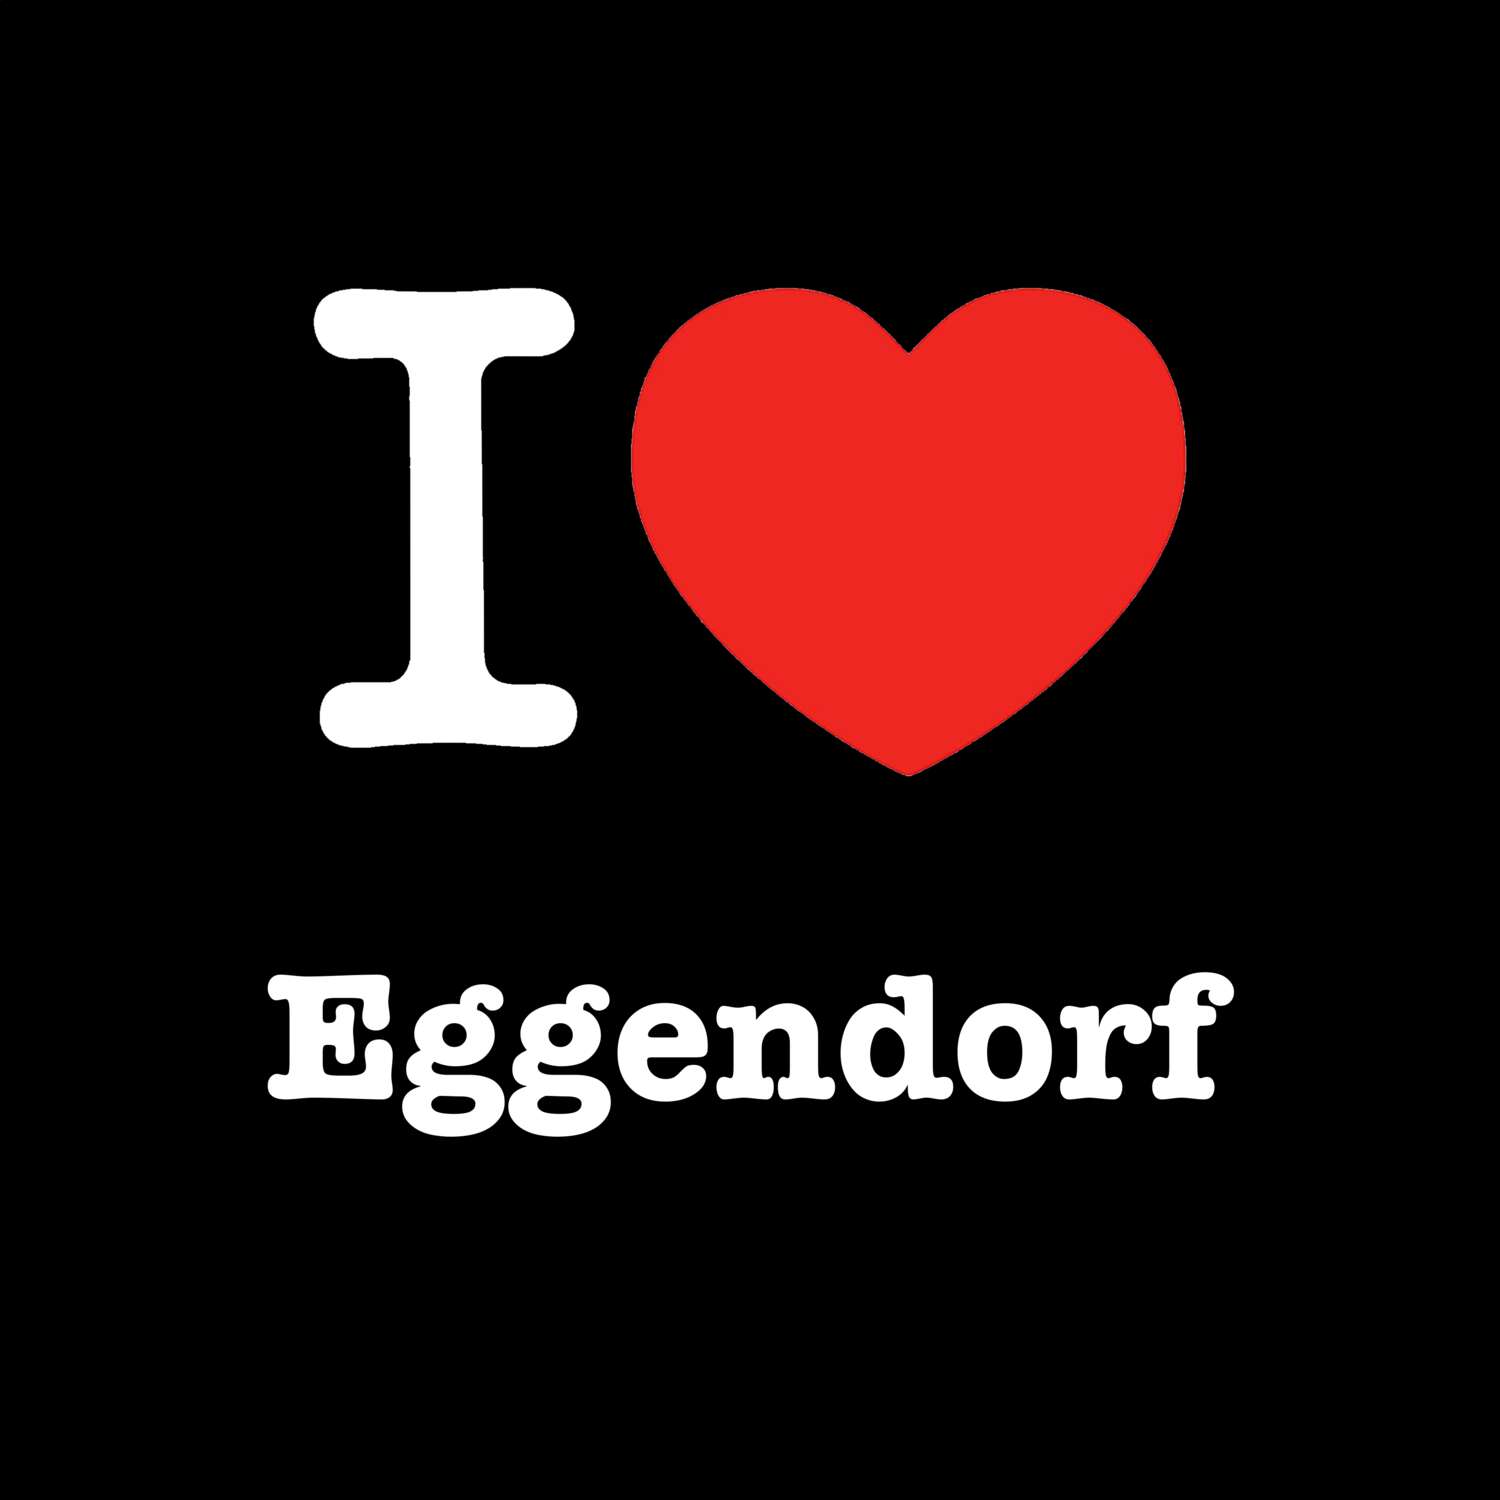 Eggendorf T-Shirt »I love«